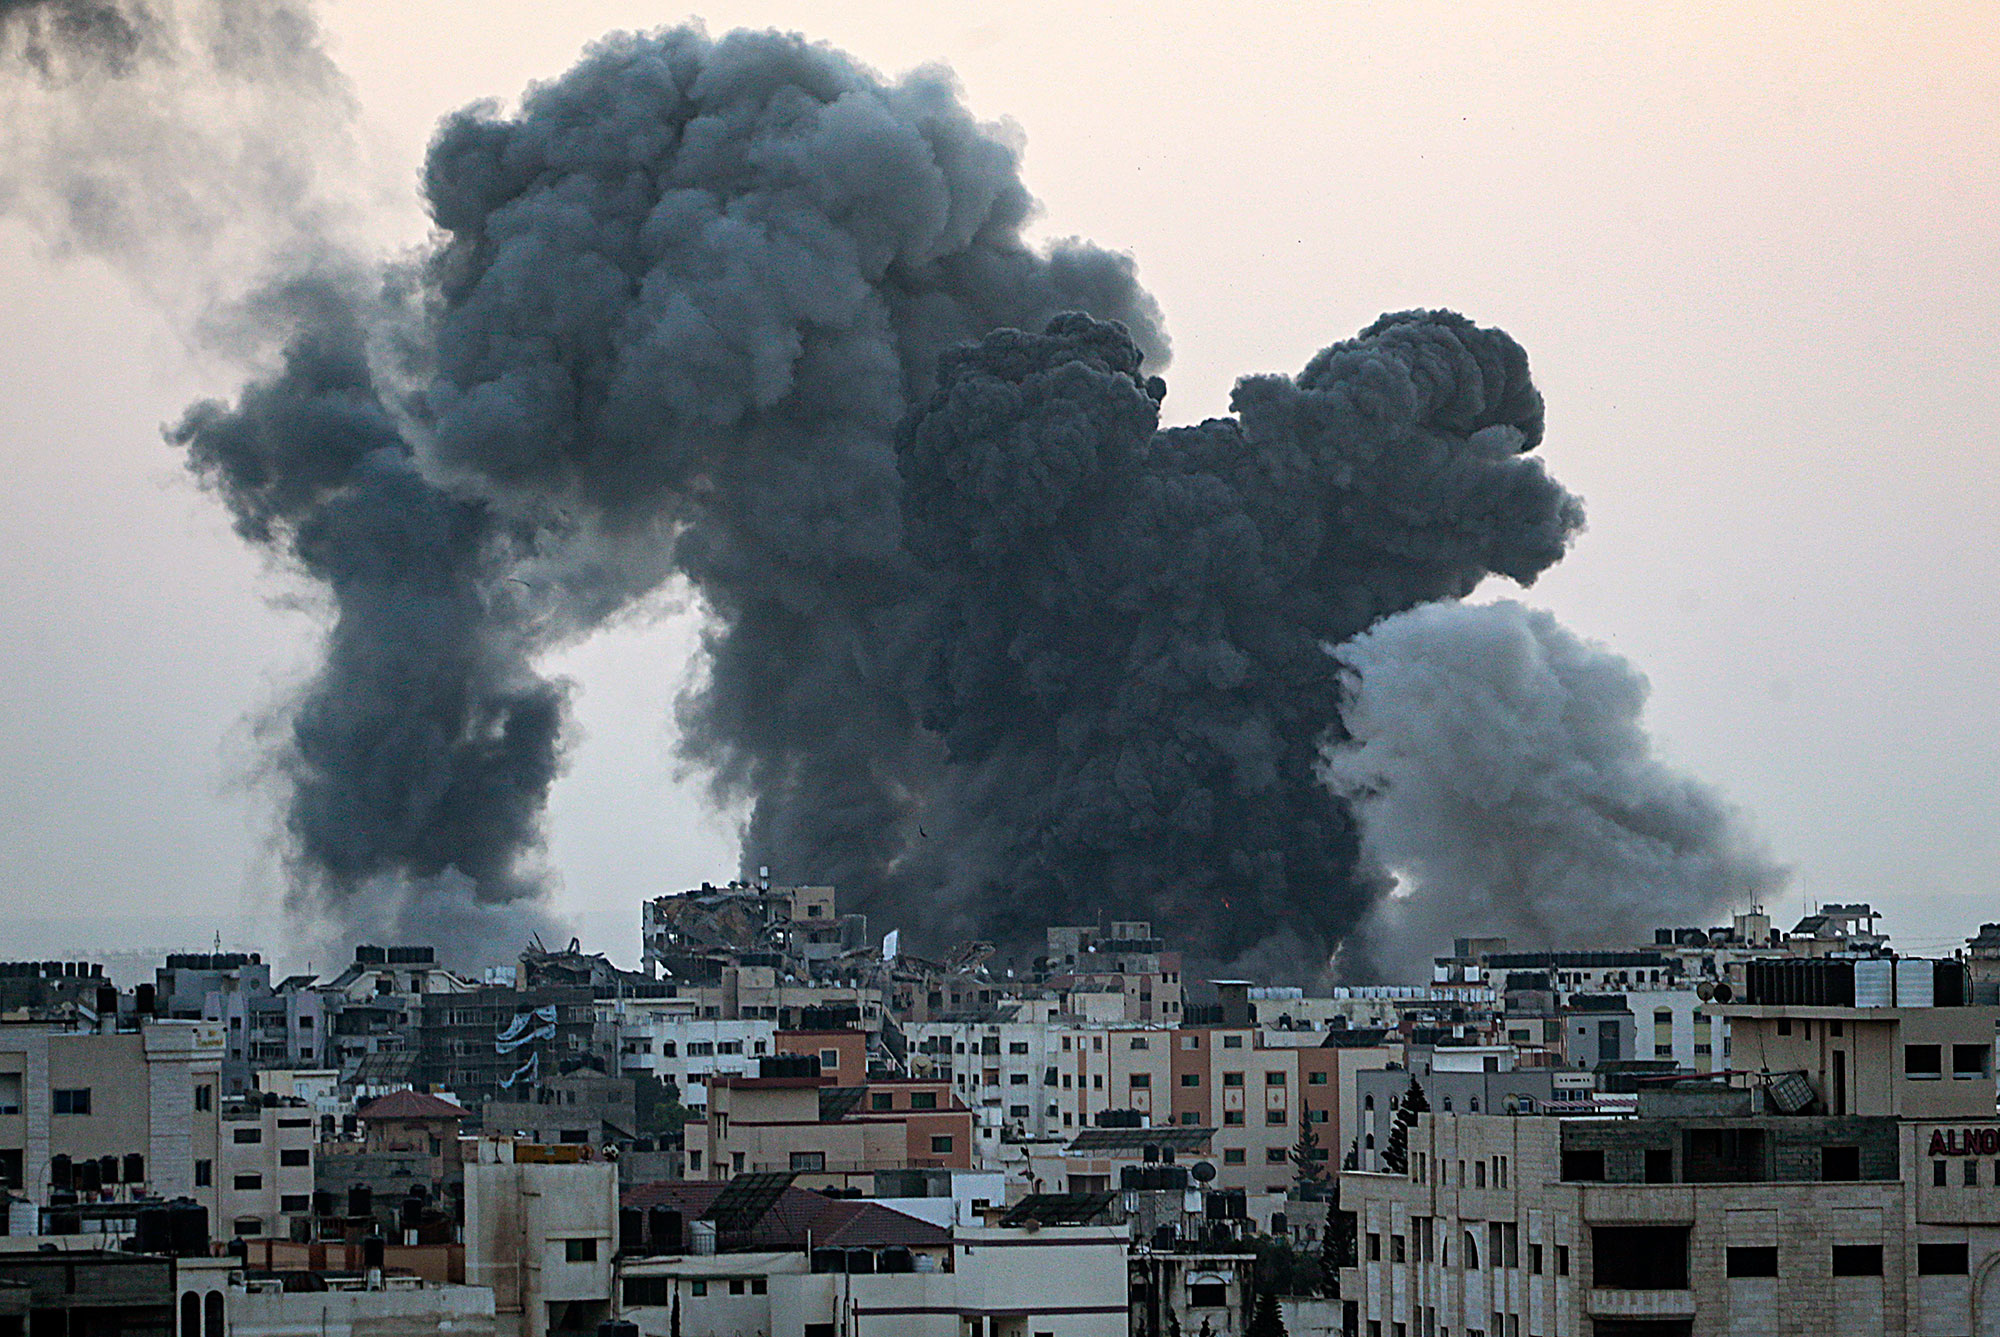 حماس: القصف الإسرائيلي أسفر عن فقدان أكثر من 60 أسيراً وتدمير 24 آلية عسكرية إسرائيلية